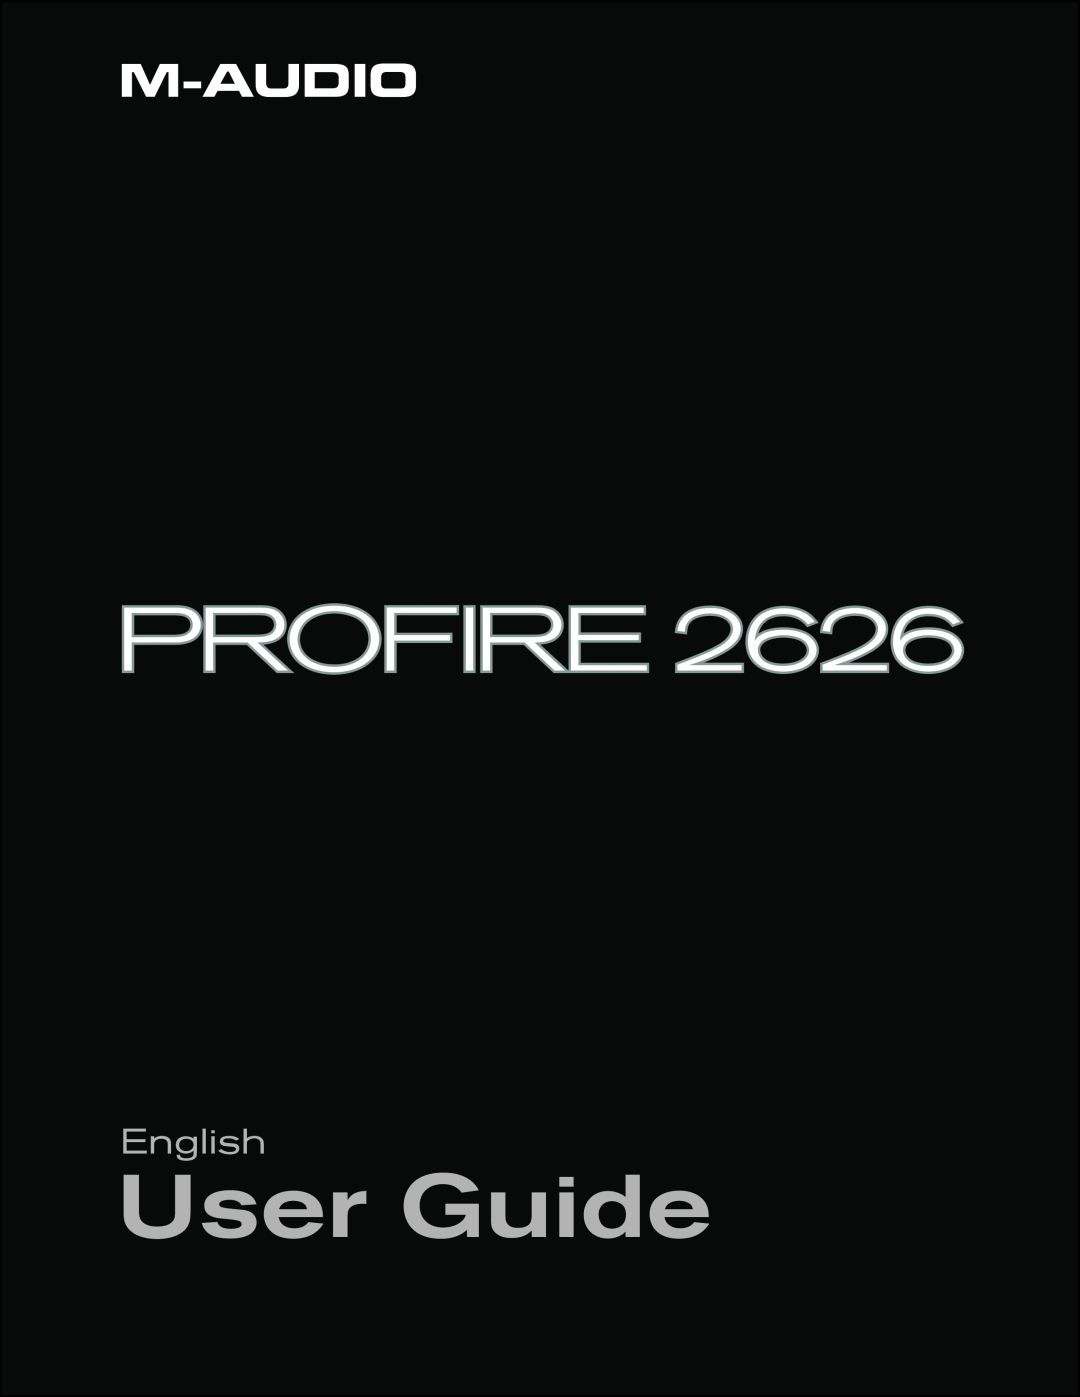 M-Audio 2626 manual User Guide 